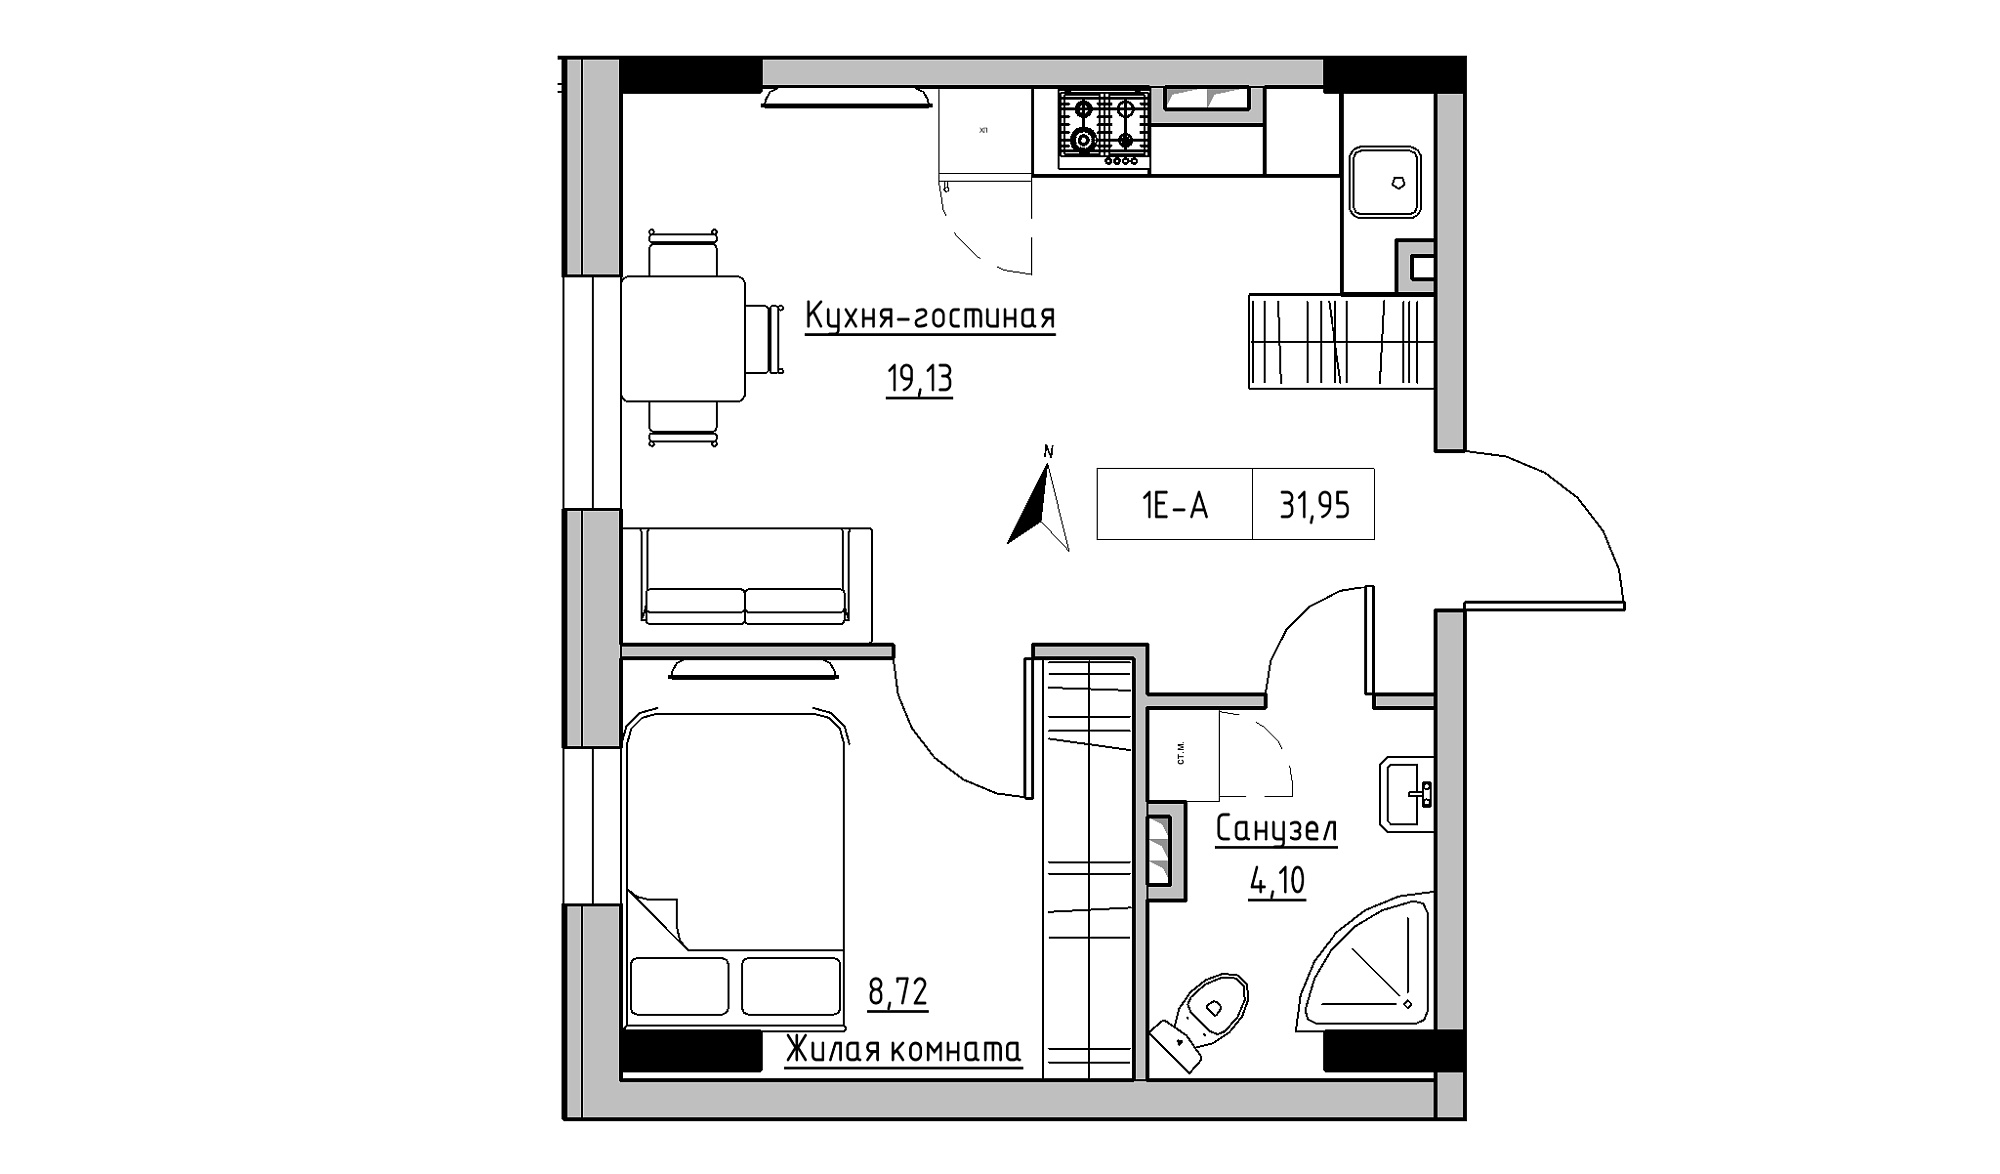 Планування 1-к квартира площею 31.95м2, KS-025-02/0003.